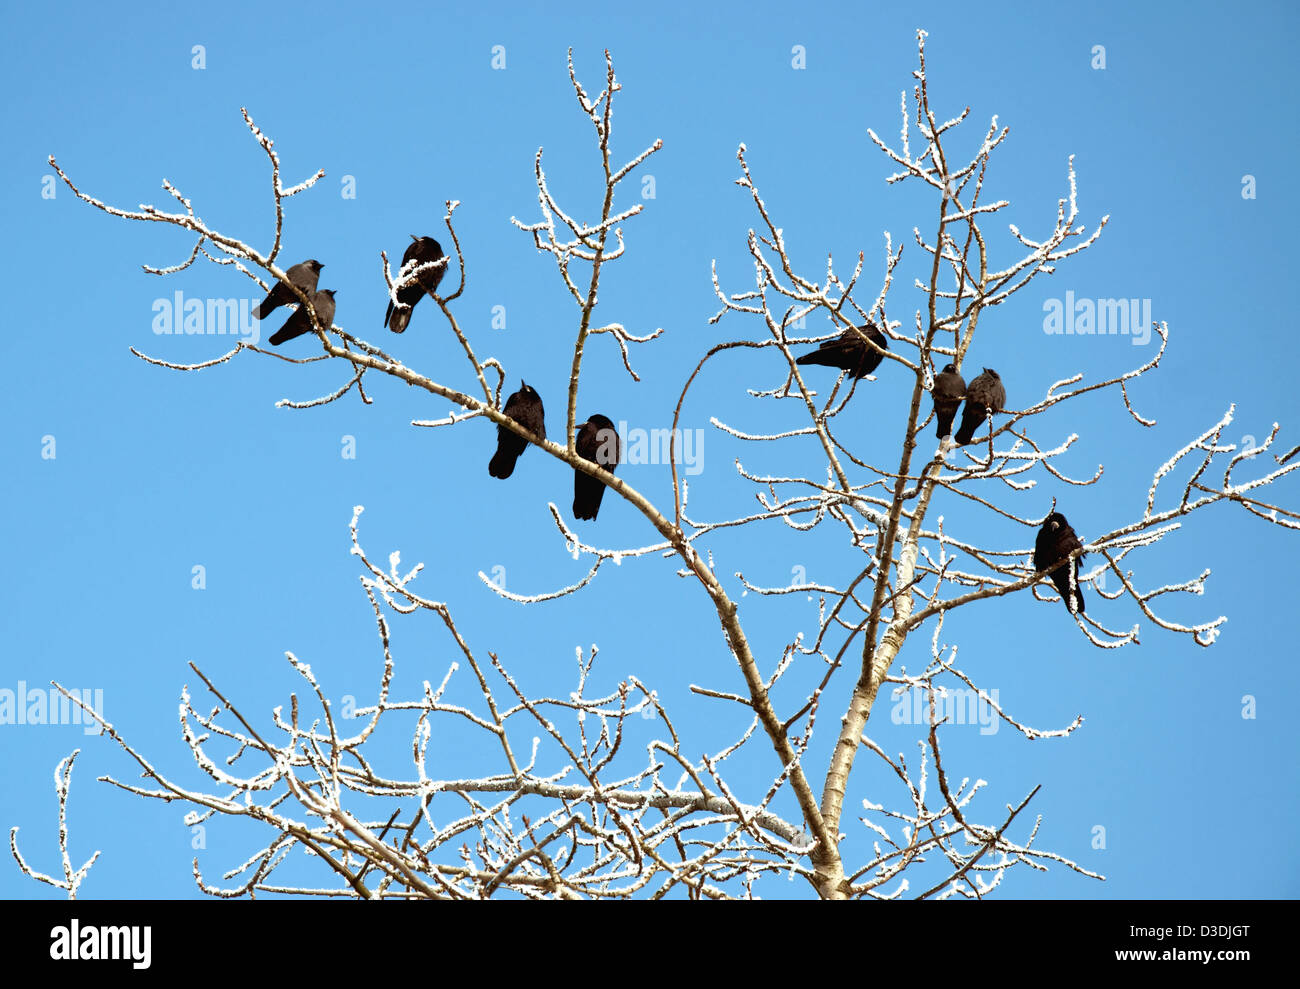 Rooks nella struttura ad albero sui rami con neve sul cielo blu Foto Stock